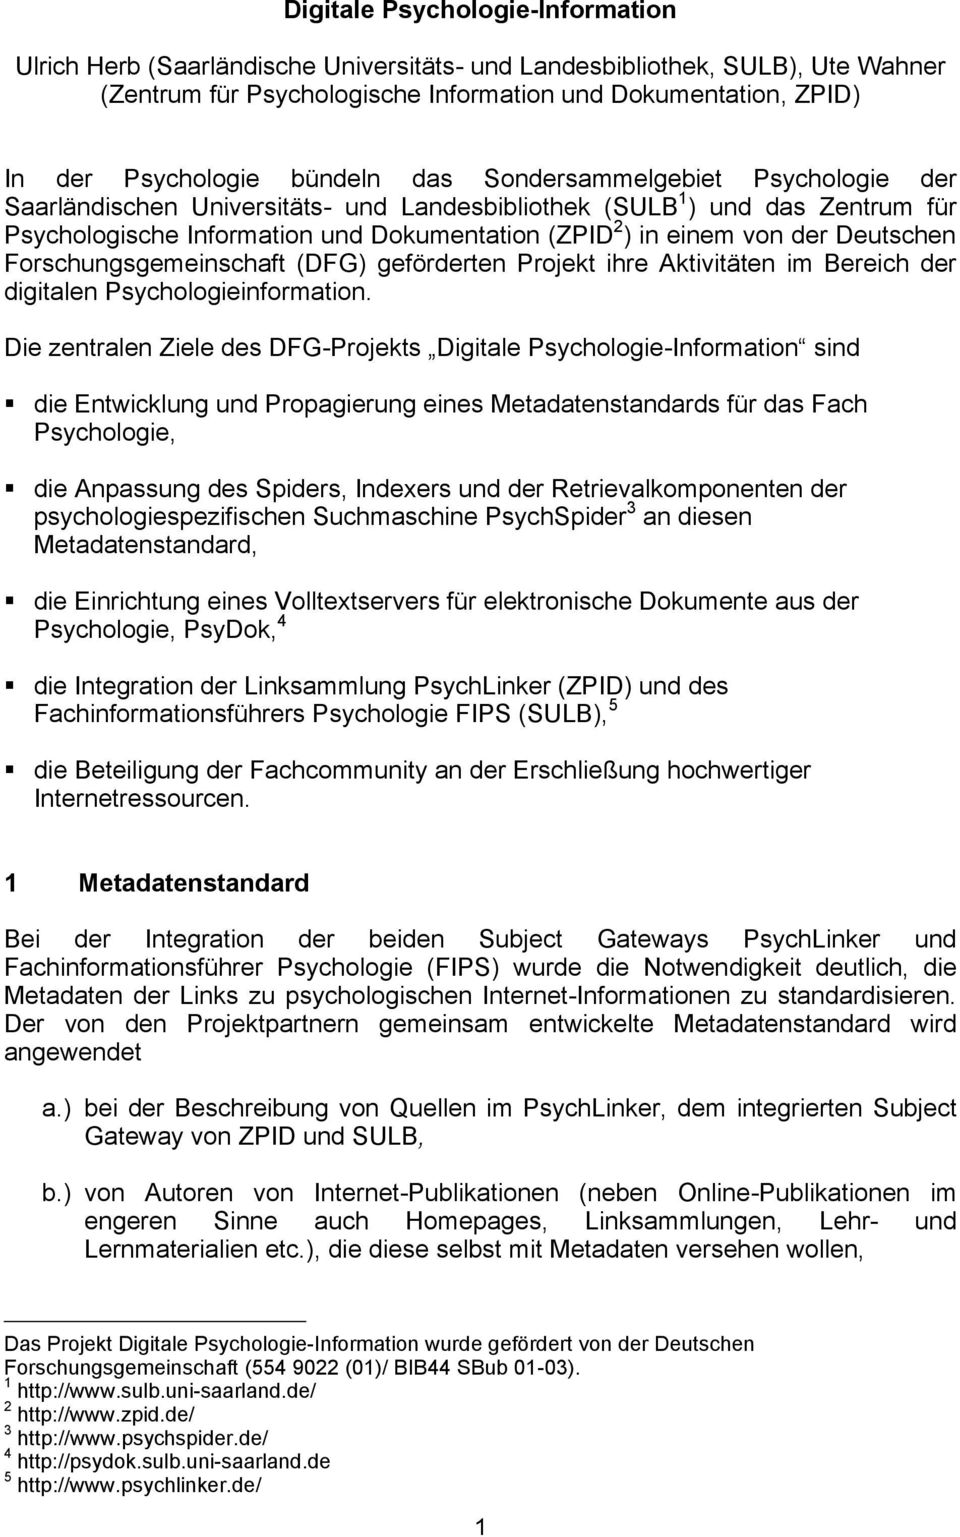 Deutschen Forschungsgemeinschaft (DFG) geförderten Projekt ihre Aktivitäten im Bereich der digitalen Psychologieinformation.